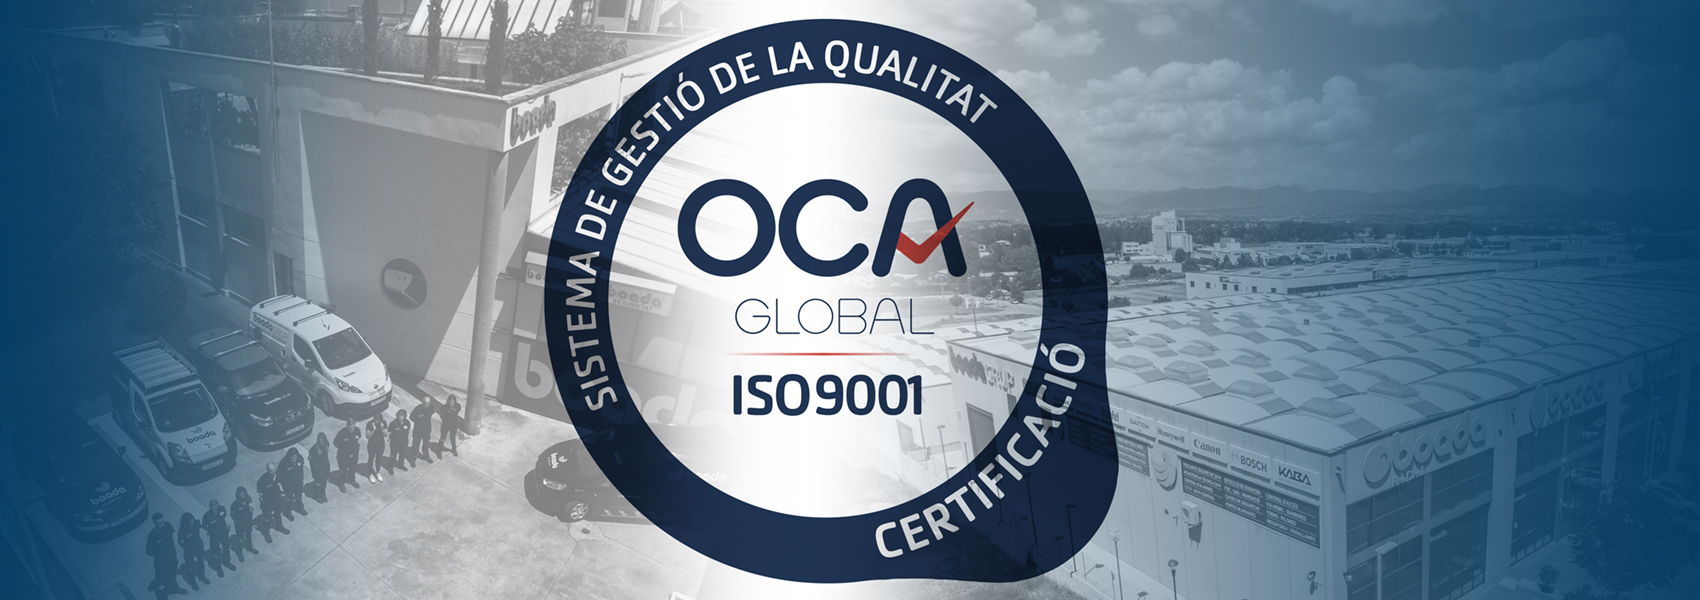 Boada, empresa de Calidad ISO 9001: 2015
 Primera empresa instaladora de sistemas contra incendio de OCA GLOBAL